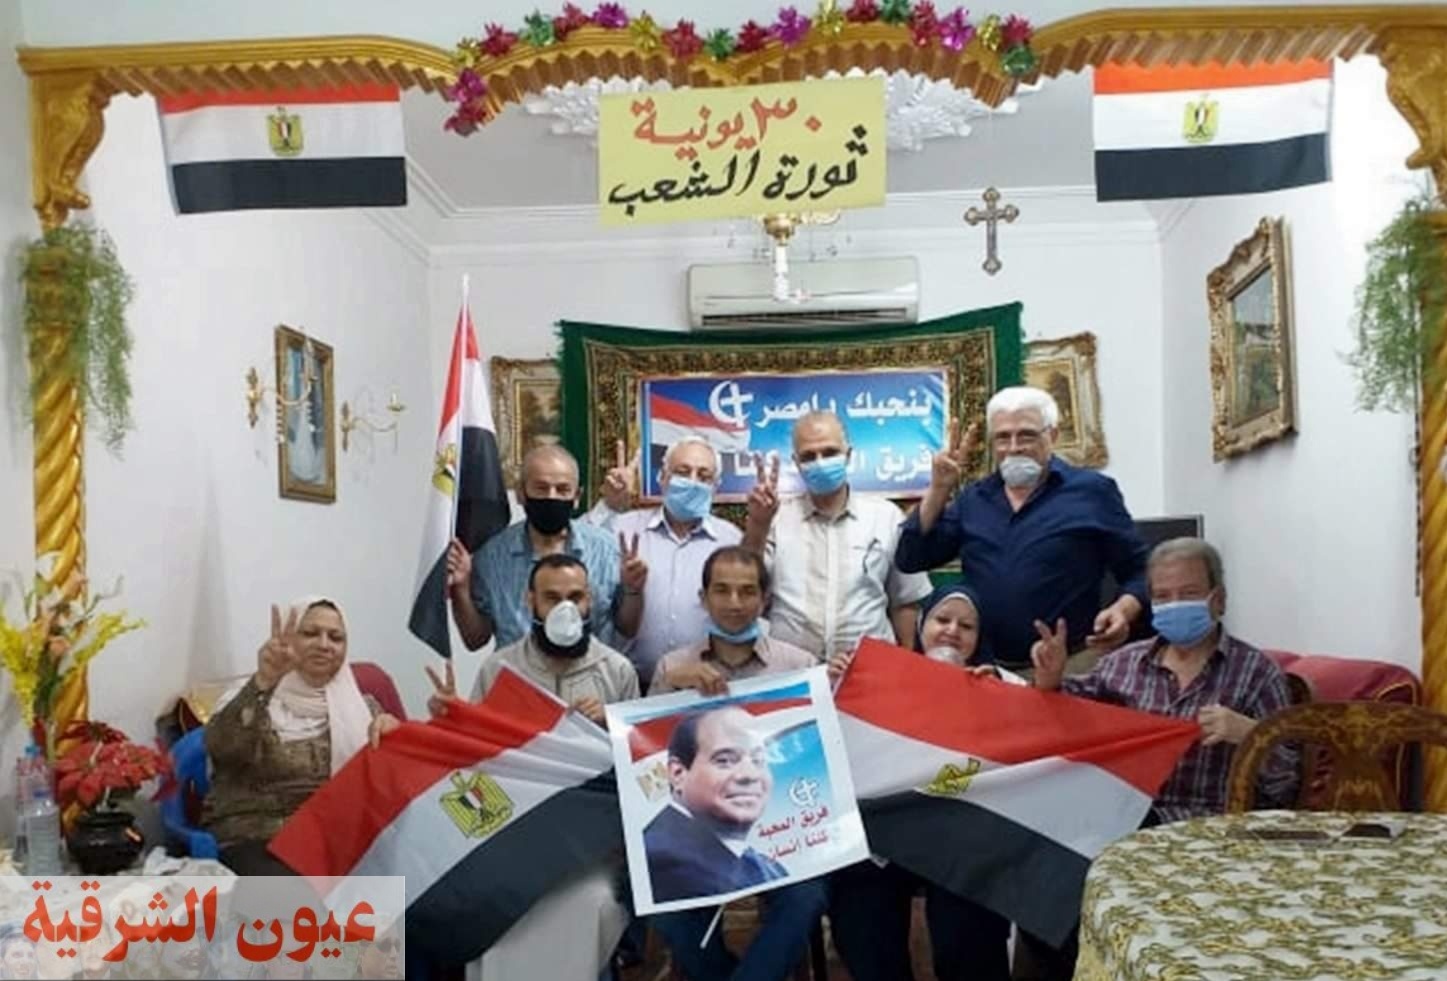 الشرقية تحتفل بذكري ثورة 30 يونيو المجيدة برفع طائرات ورقية عليها علم مصر وصور الرئيس السيسي